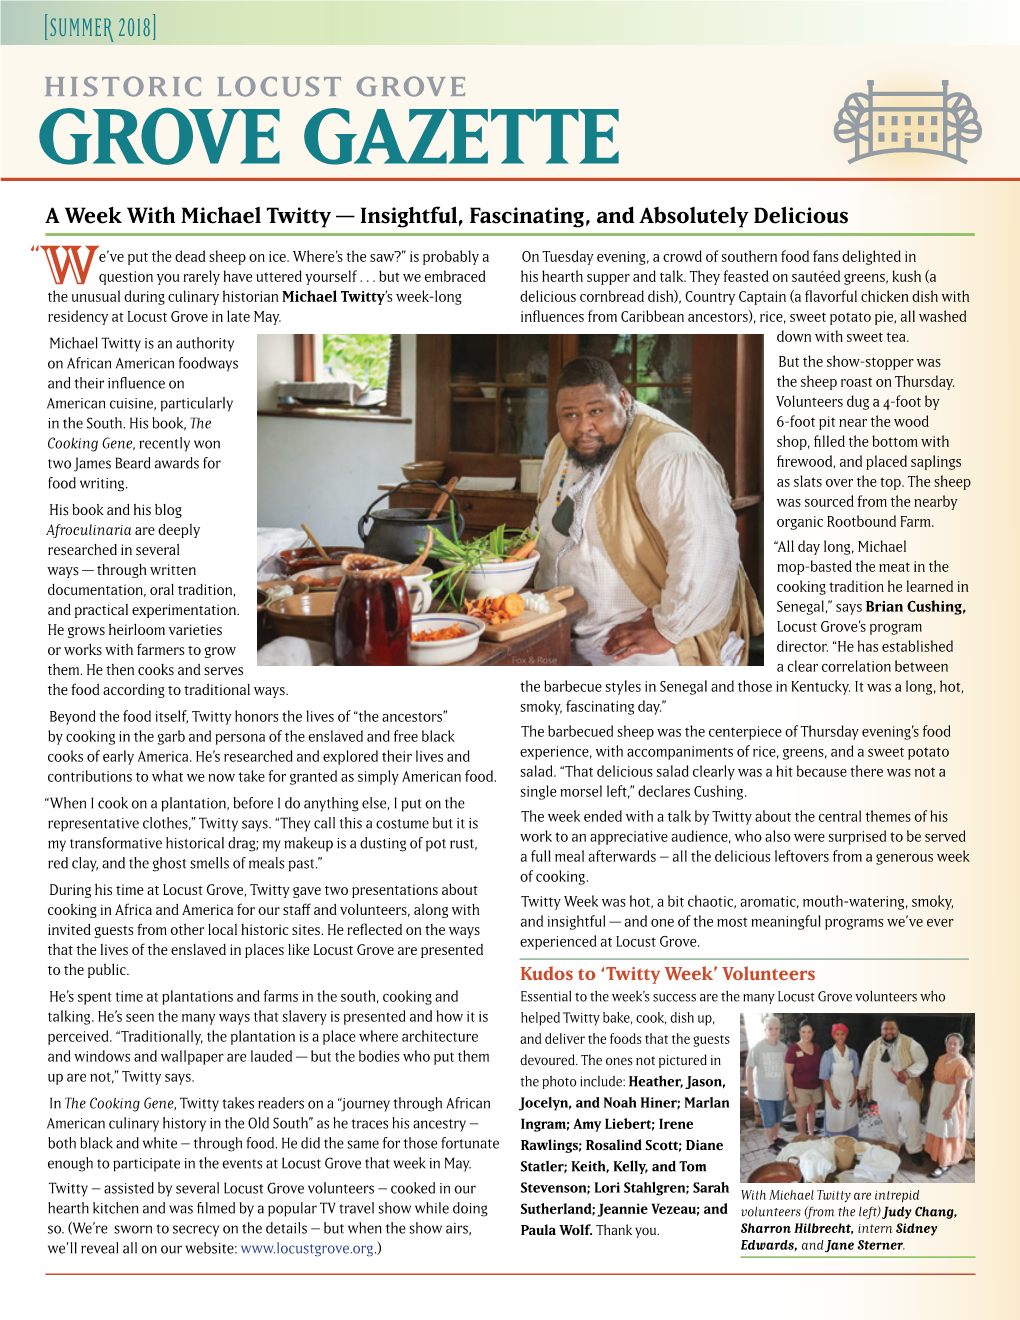 Grove Gazette